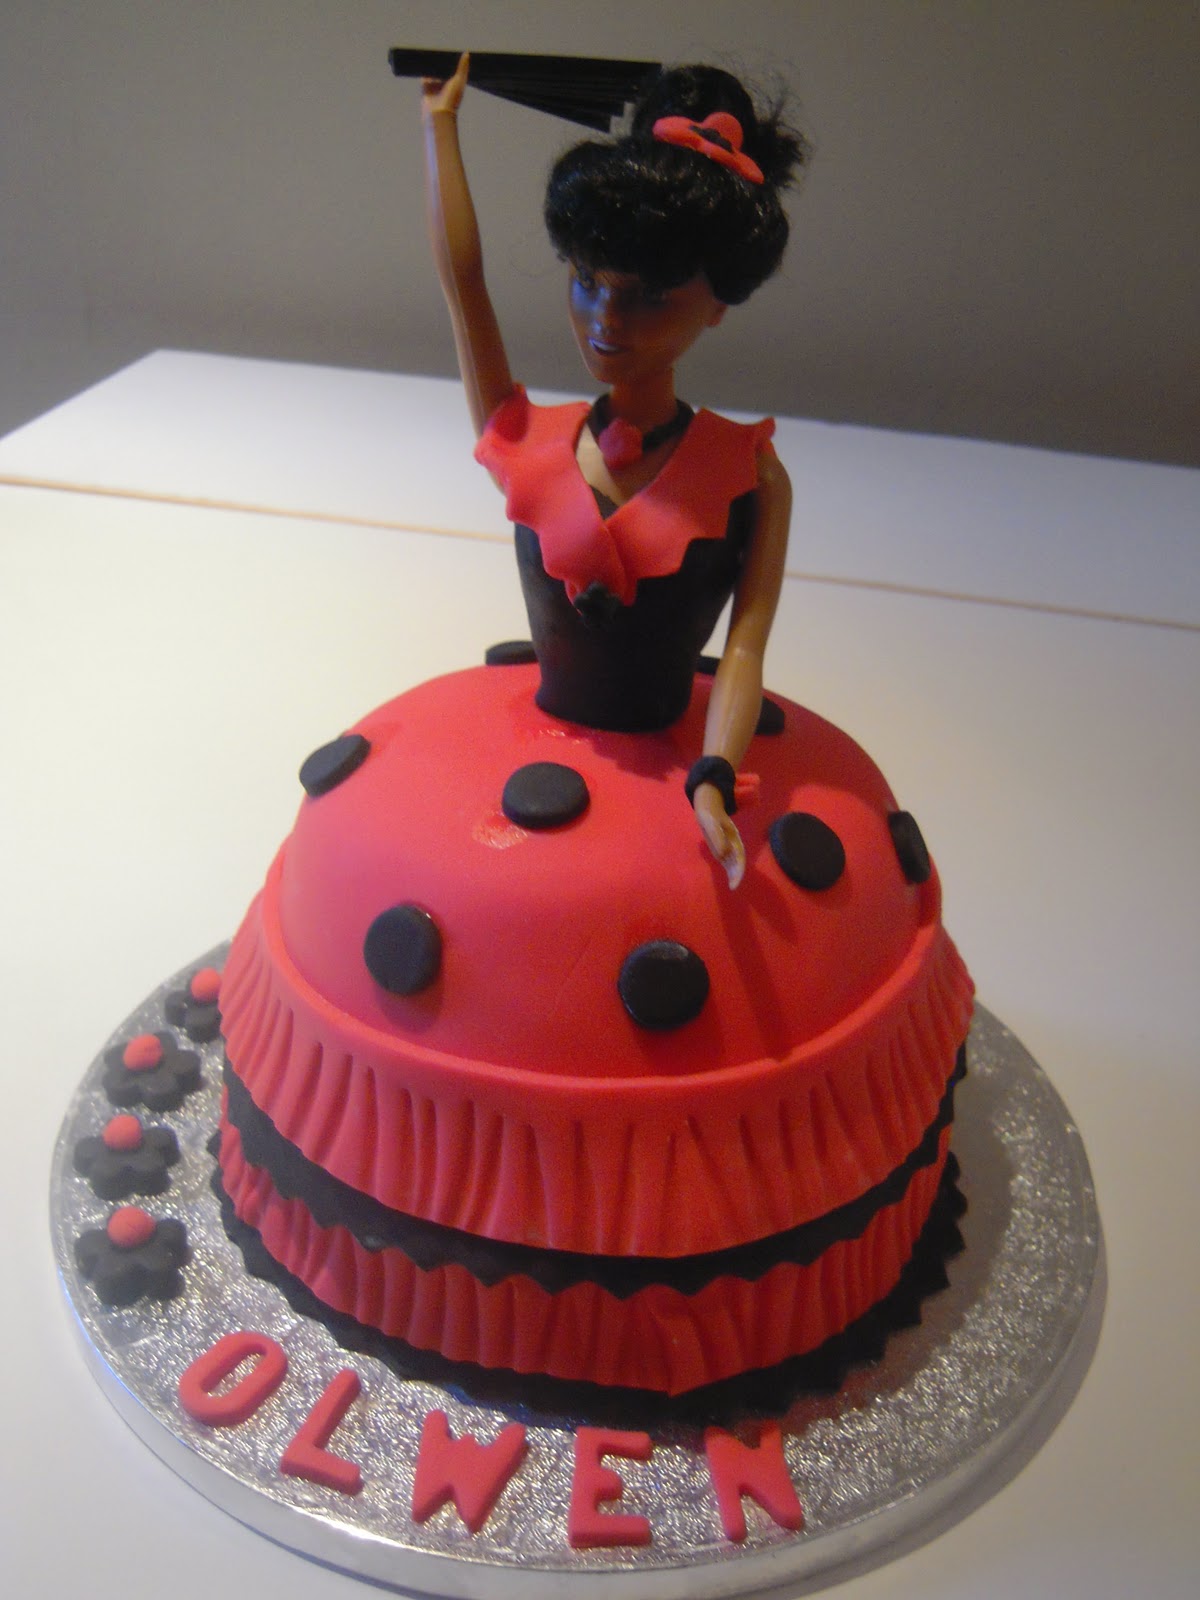 Gateau ladybug Miraculous  Ladybug cake, Ladybug cakes, Birthday cake  decorating